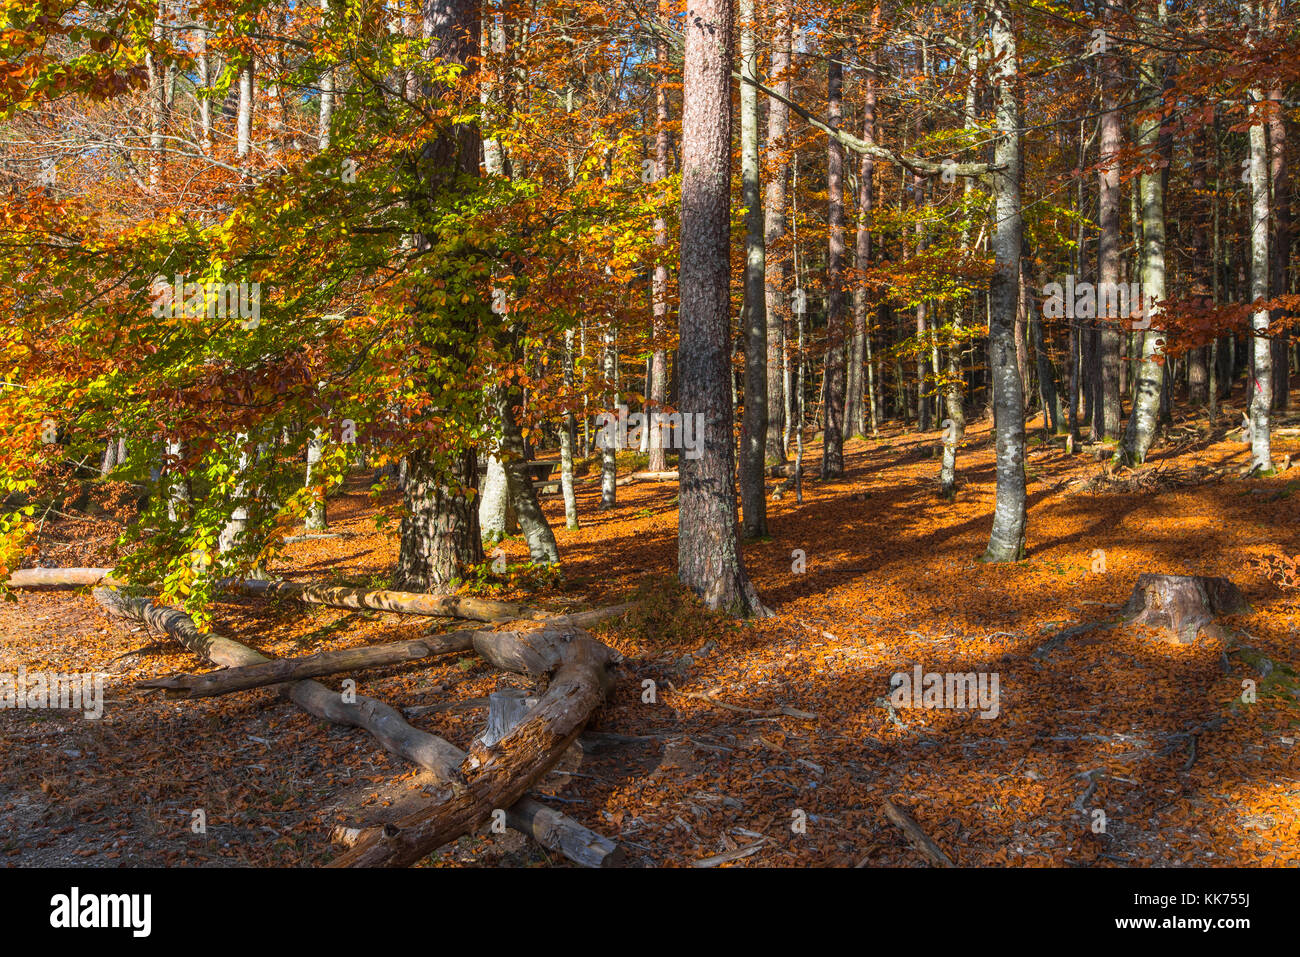 Herbst Spaziergang durch bunte Wälder, Herbst Licht und Farben, Mont Sainte-odile, in deutschen Odilienberg, Peak in den Vogesen, Elsass, Frankreich Stockfoto